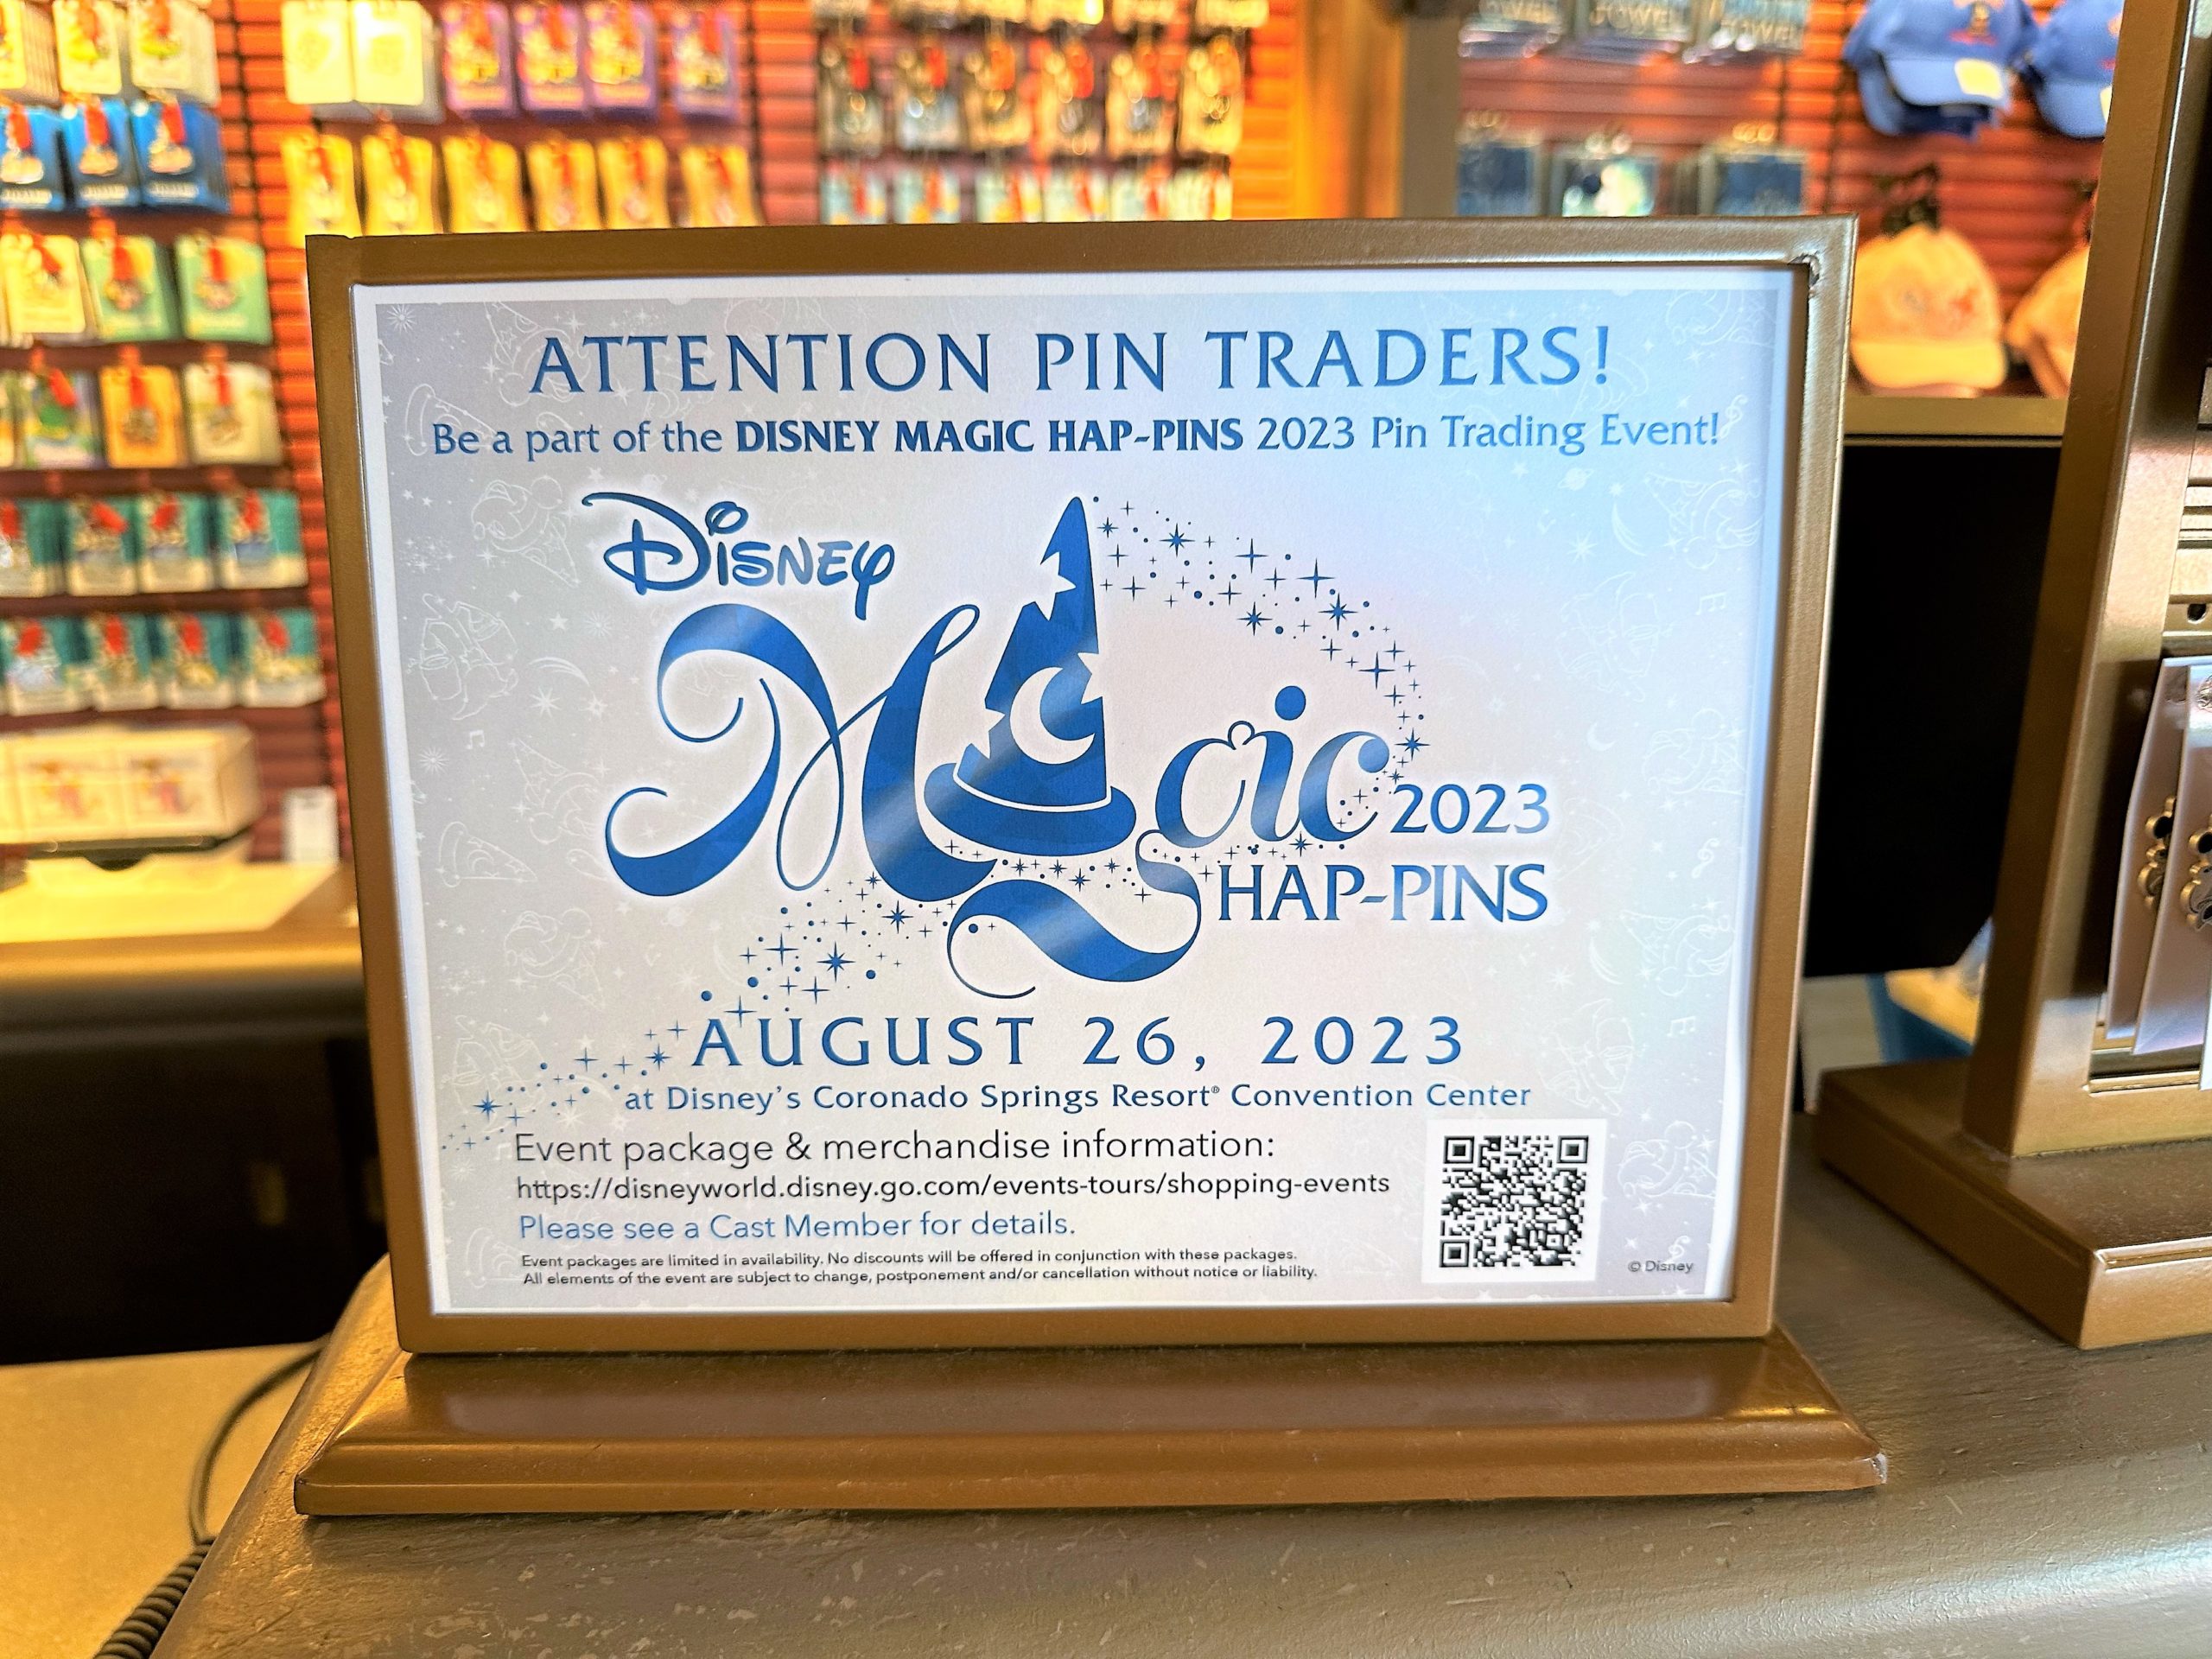 Disney Magic HAP-Pins 2023 Pin Trading Event